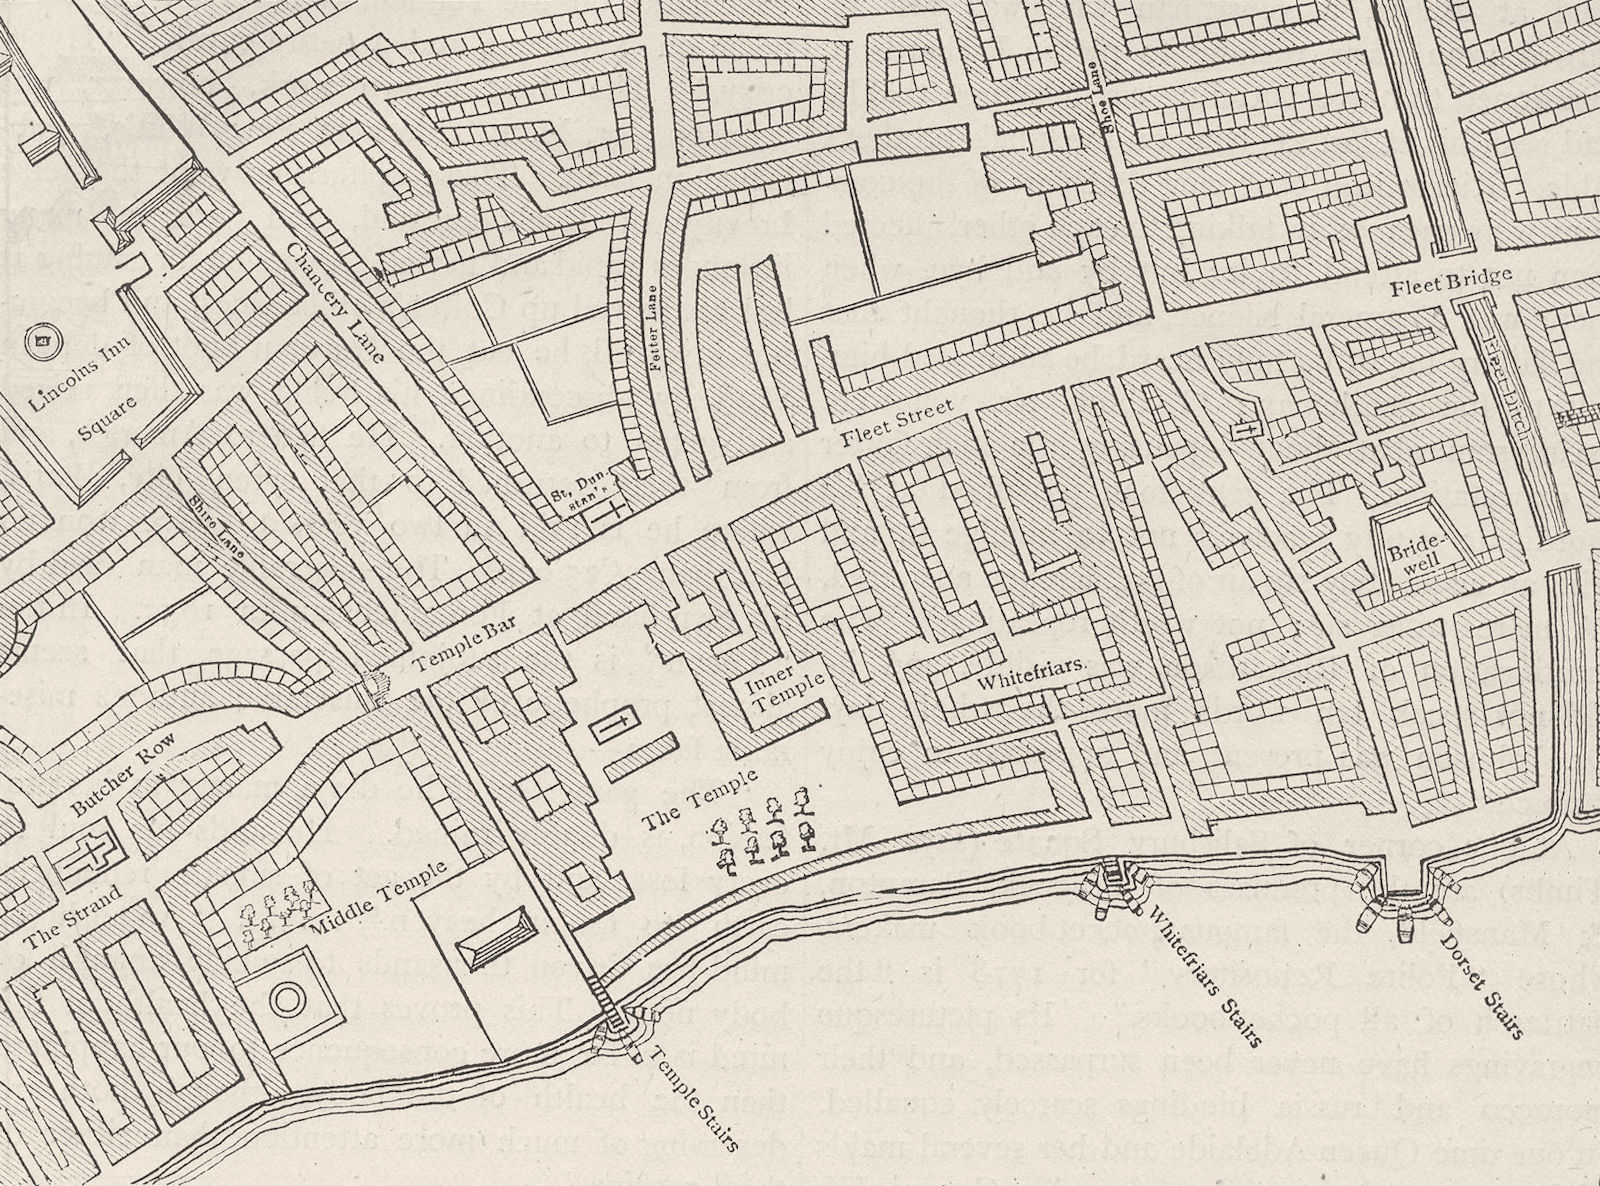 FLEET STREET. Fleet Street, the Temple, &c from a 1720 map. London c1880